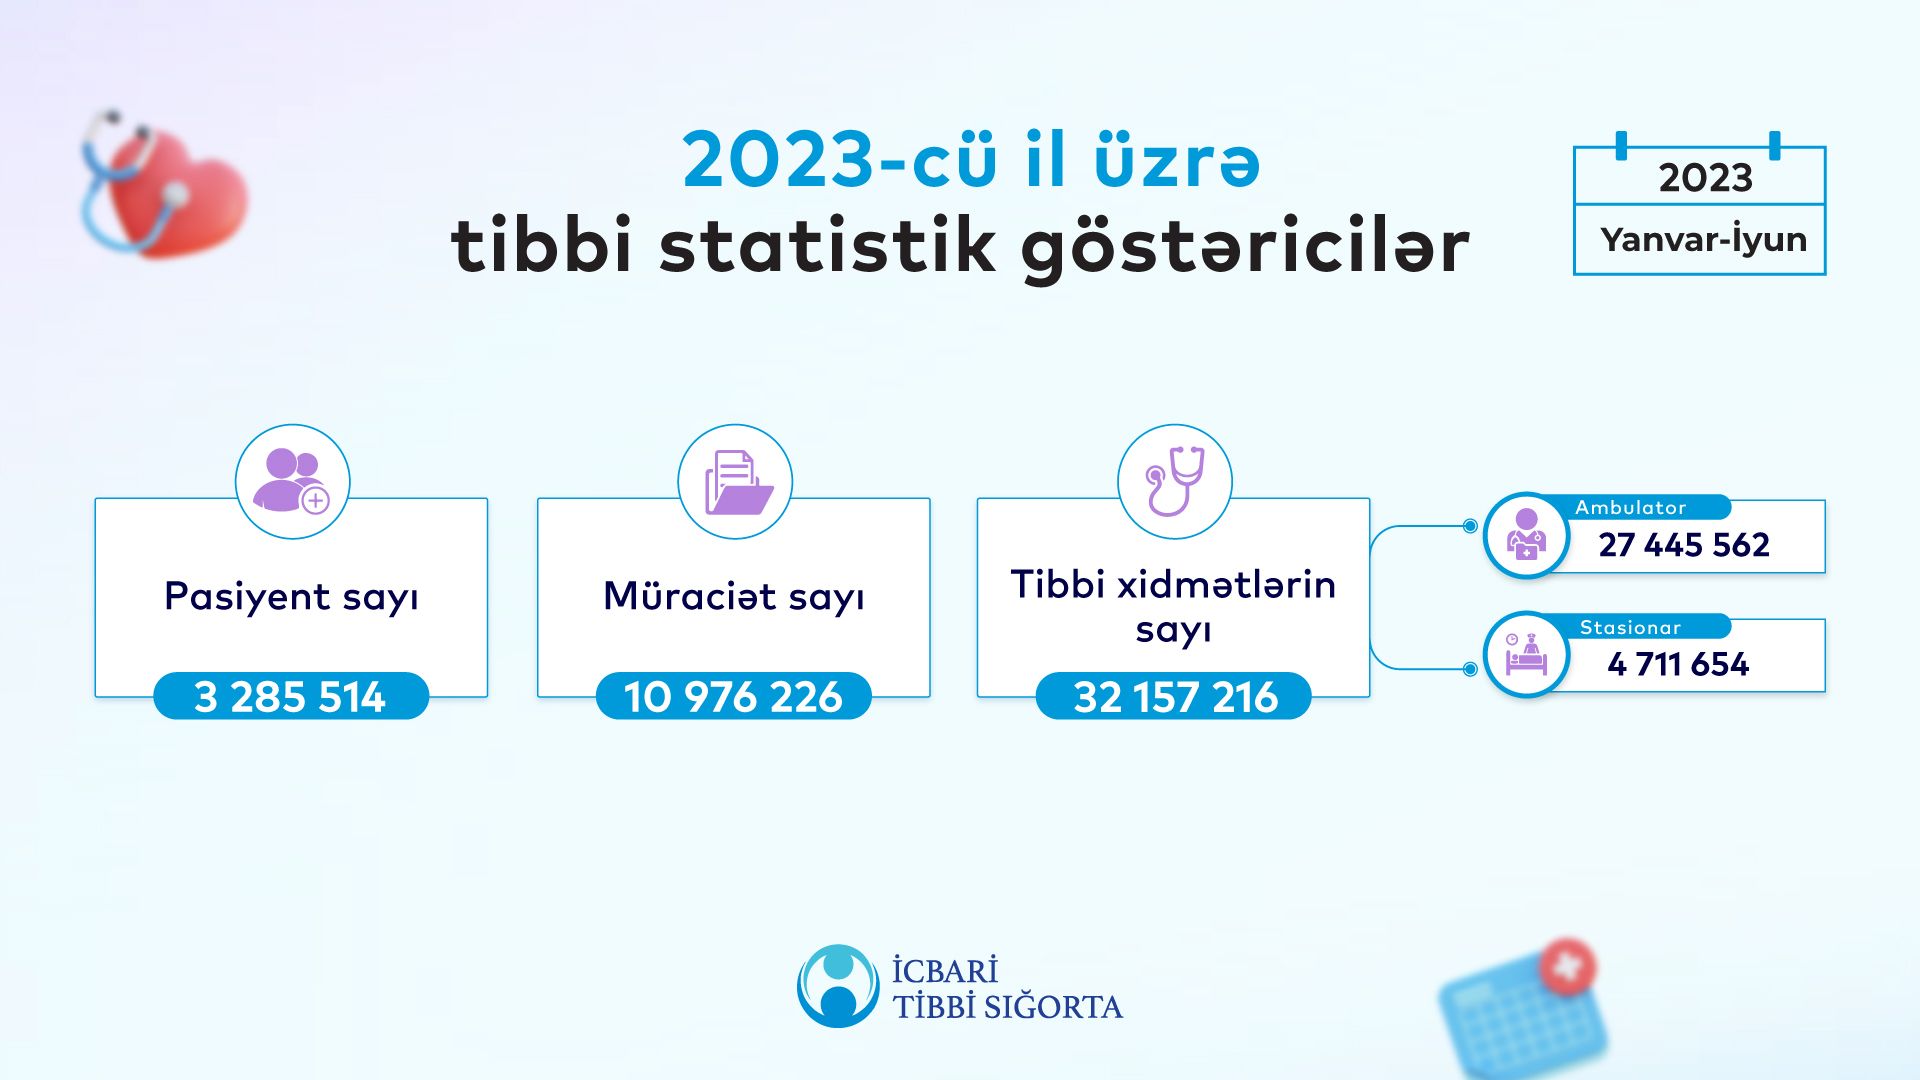 Azərbaycan əhalisinin 34%-i icbari tibbi sığortadan   yararlanıb